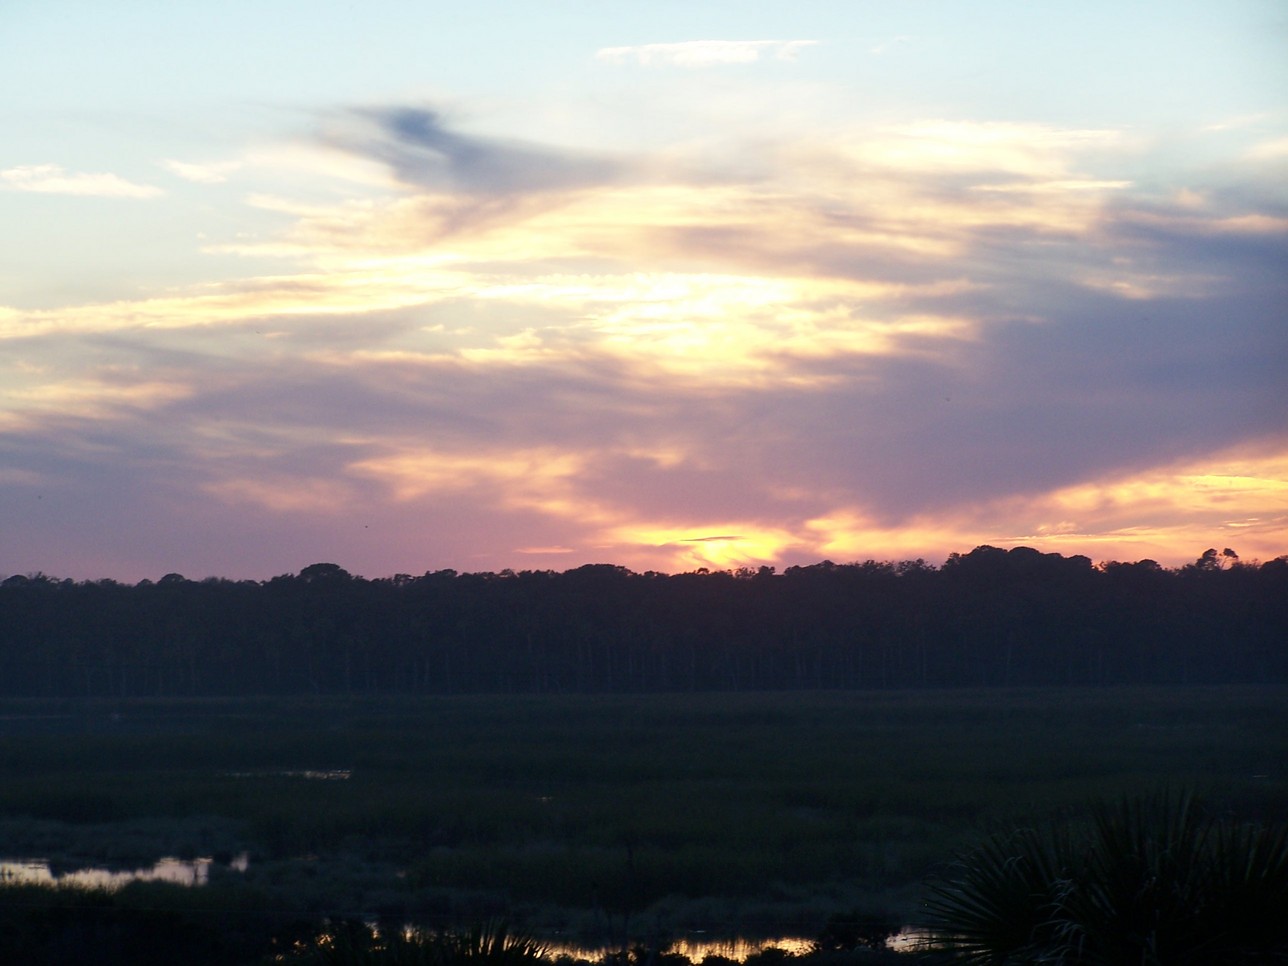 Jacksonville, FL: A sunset overlooking the marsh